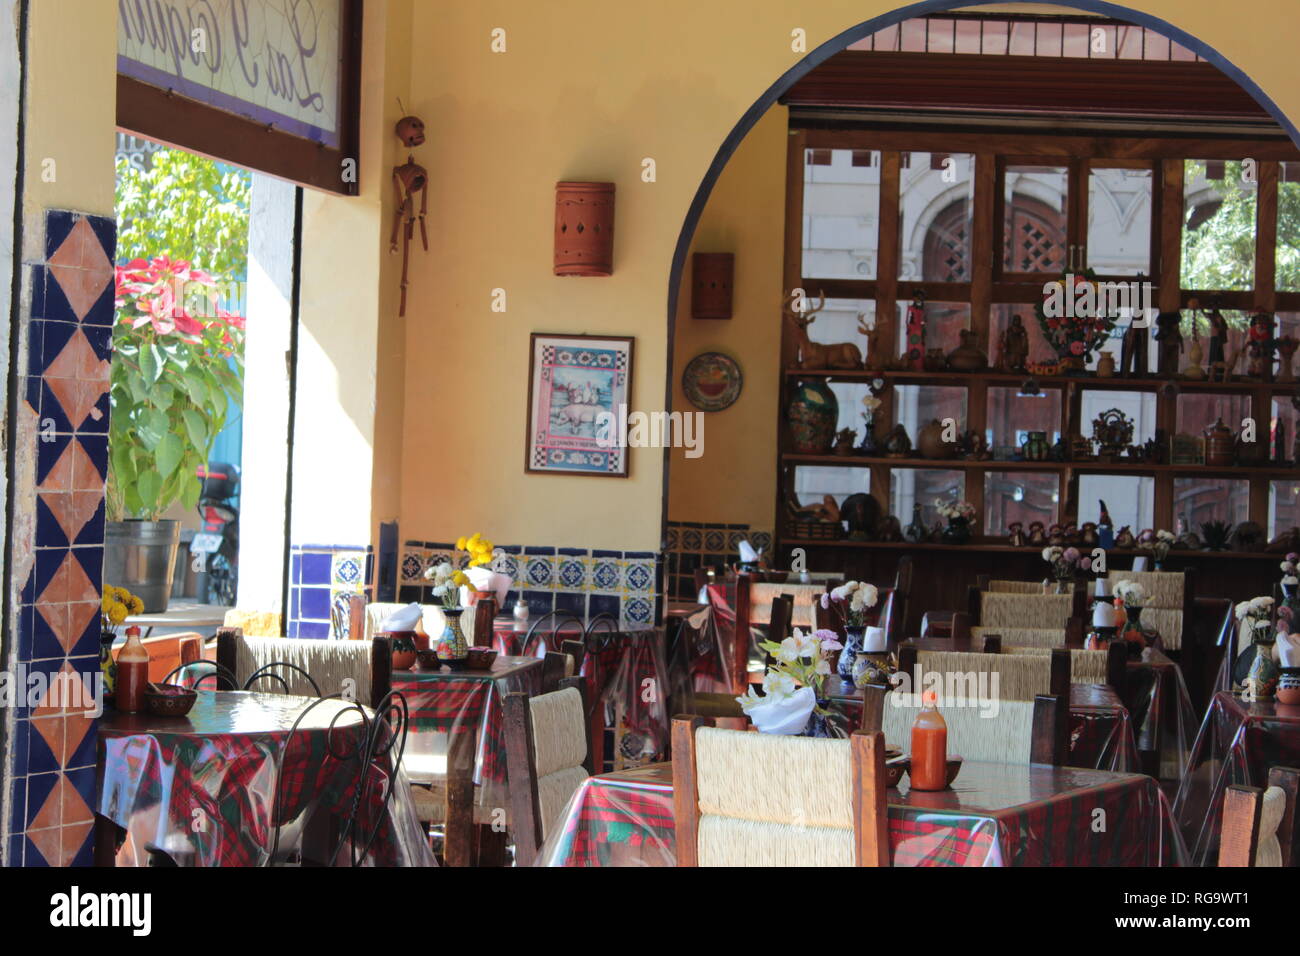 Decoración típica Mexicana en un restaurante foto tomada con un lente 18 - 55 mm a medio día en el centro de la ciudad de Guadalajara Jalisco México Stock Photo